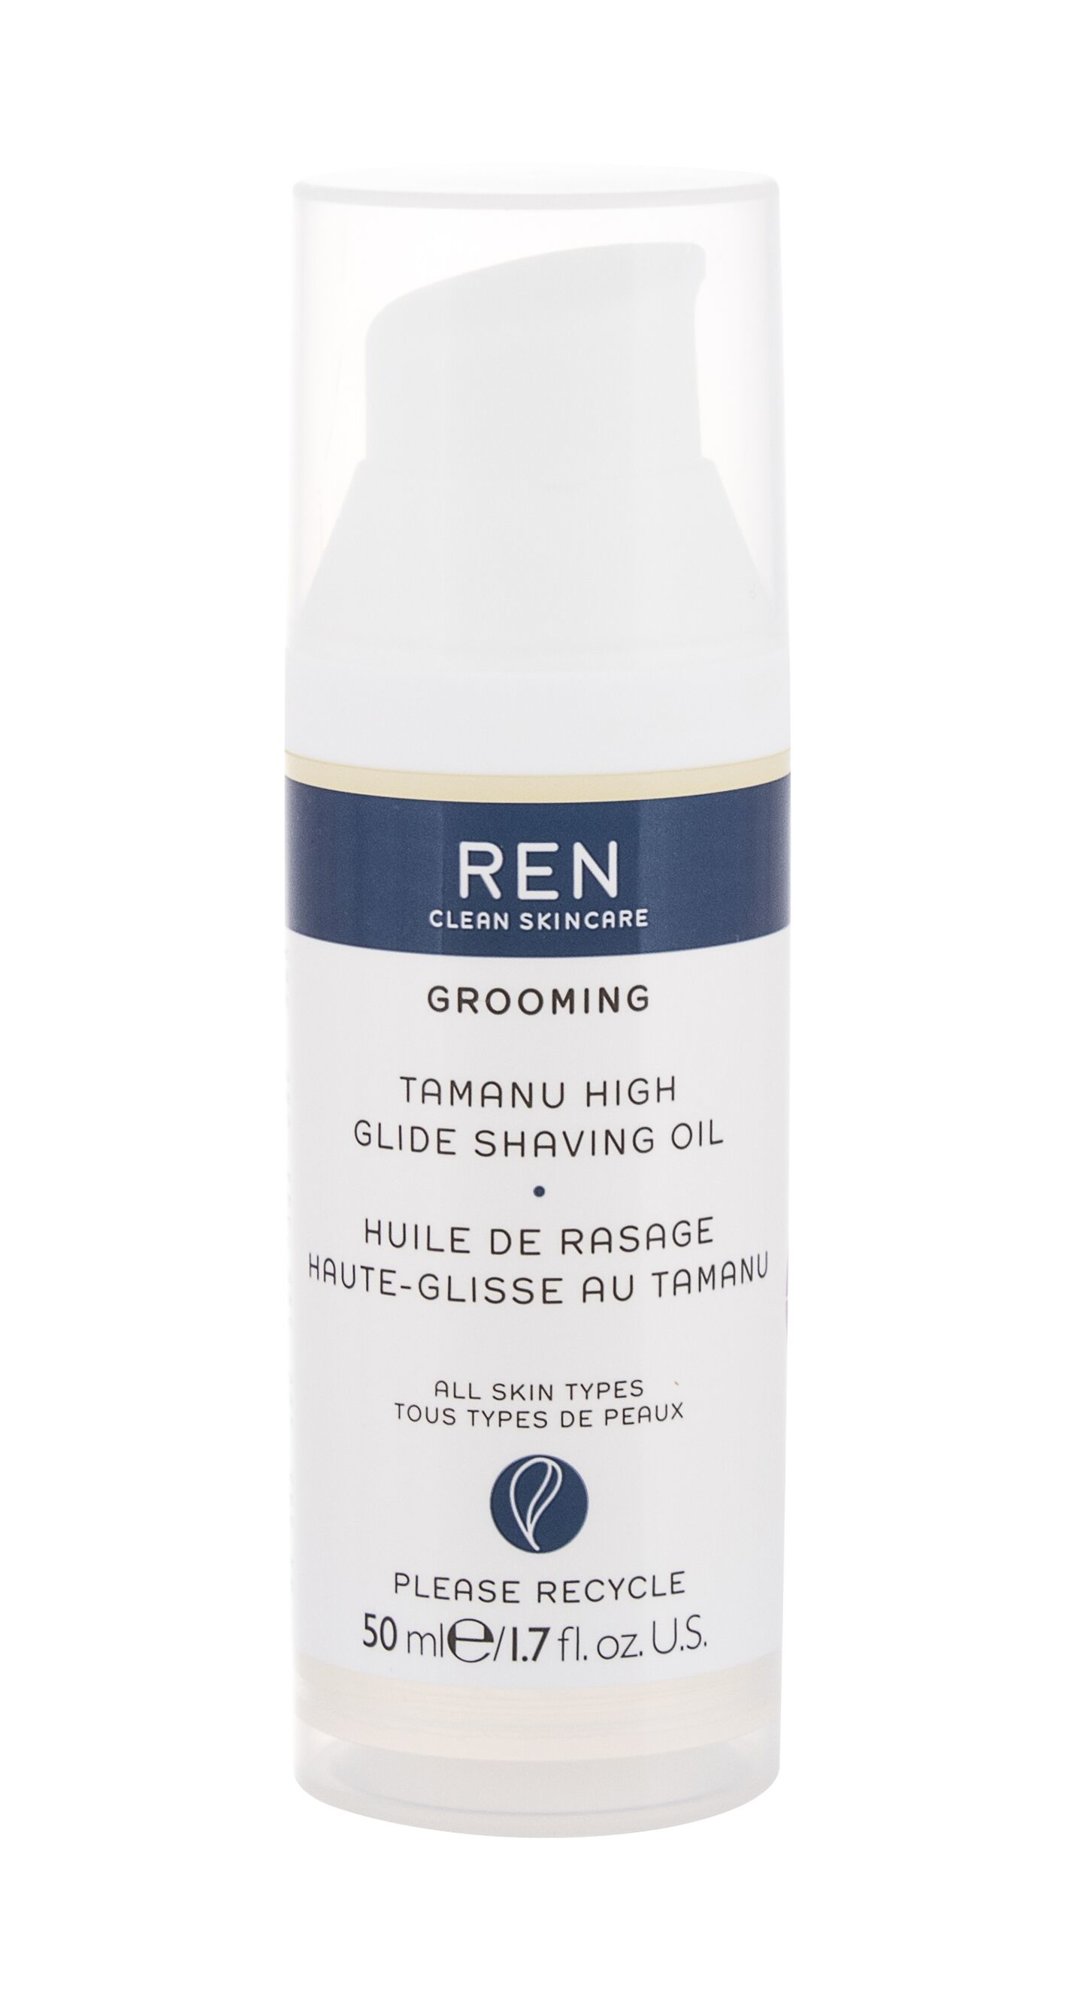 Ren Clean Skincare Grooming Tamanu High Glide Shaving Oil skutimosi gelis